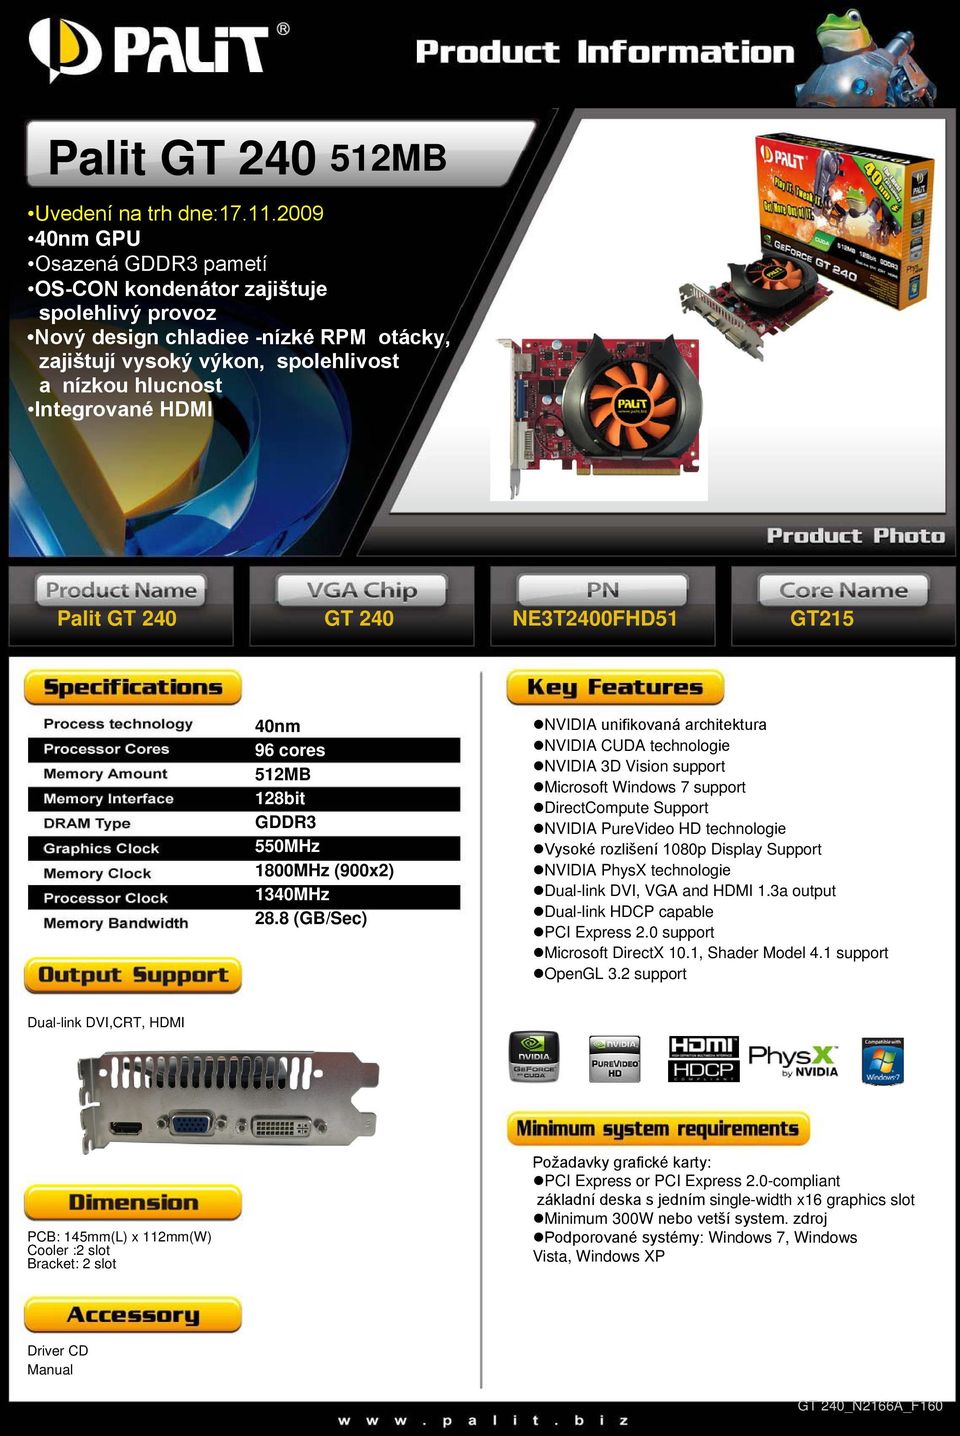 8 (GB/Sec) Vysoké rozlišení 1080p Display Support PCB: 145mm(L) x 112mm(W) Požadavky